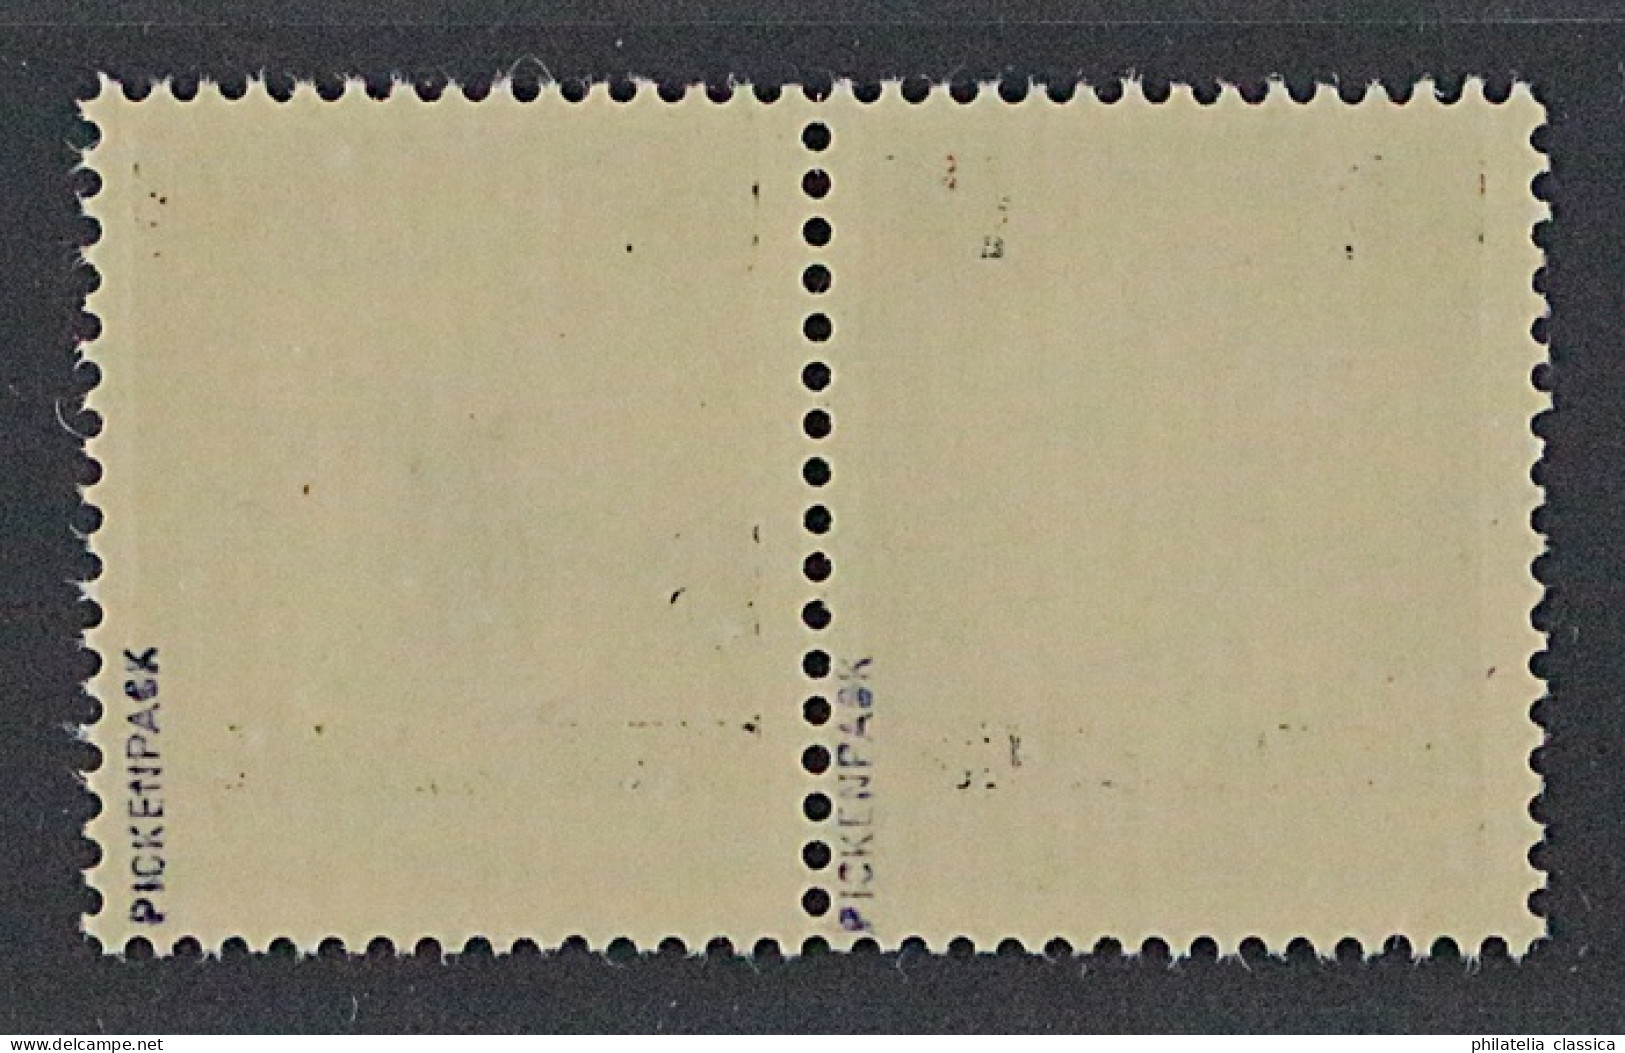 Kurland 1 II+III ** Aufdruck Type II+III Im Paar, Postfrisch, Geprüft KW 420,- € - Bezetting 1938-45